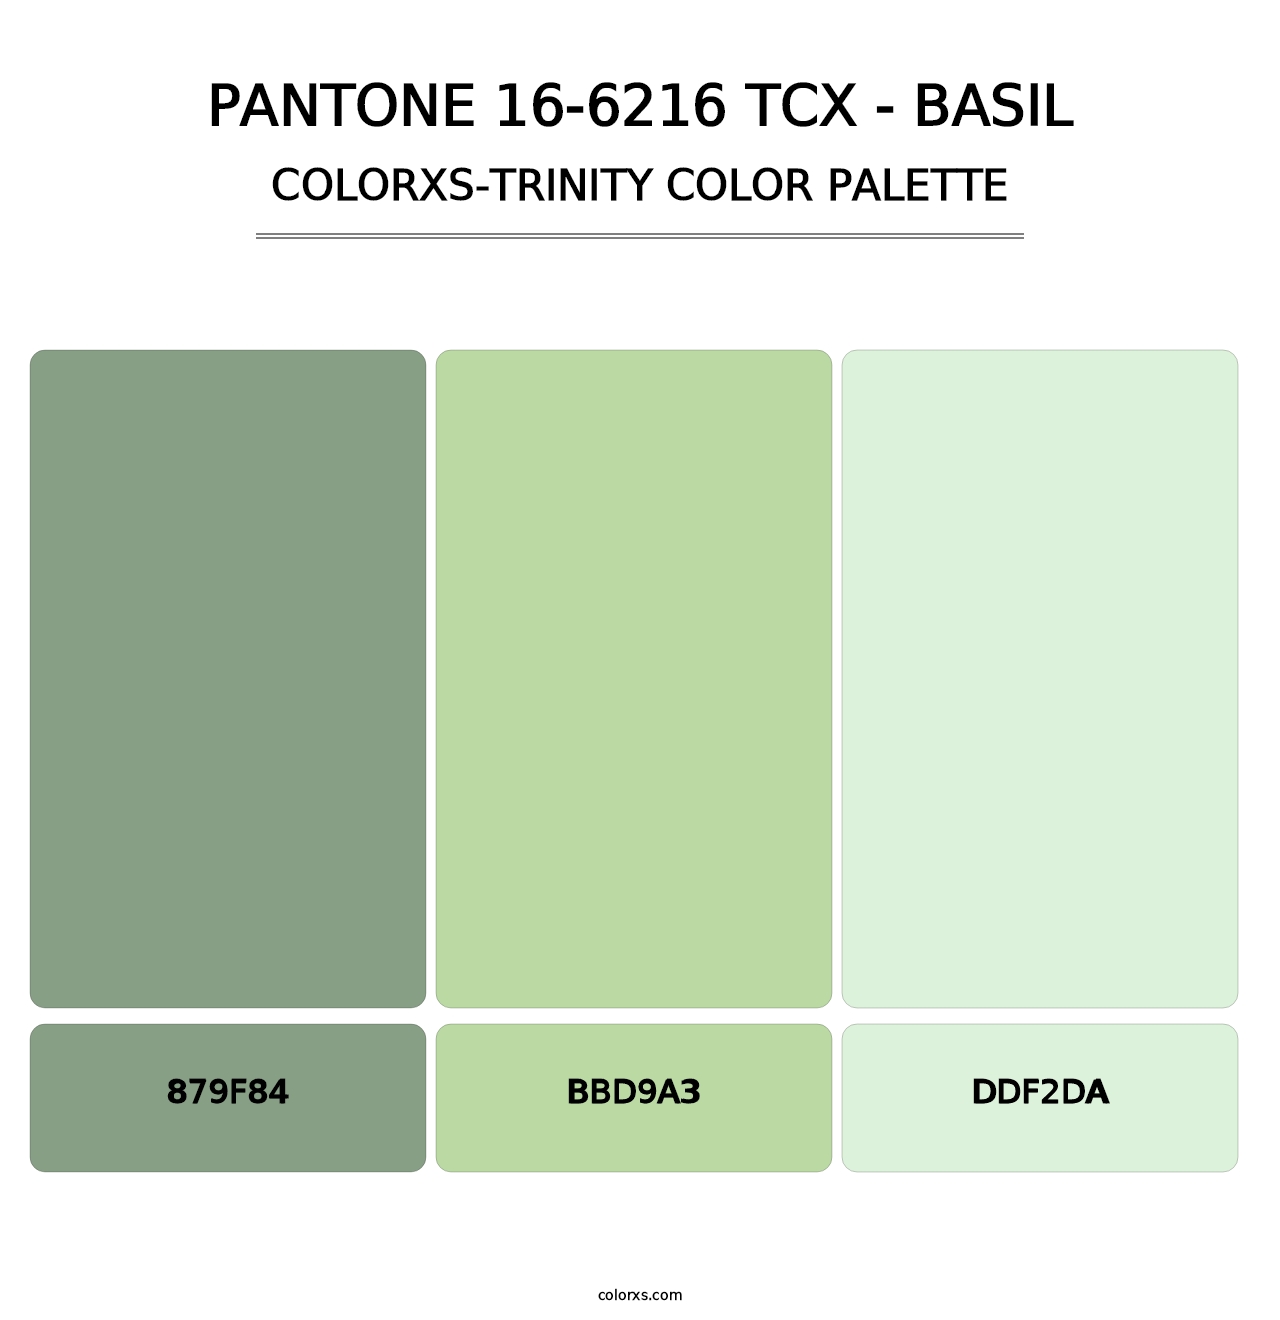 PANTONE 16-6216 TCX - Basil - Colorxs Trinity Palette